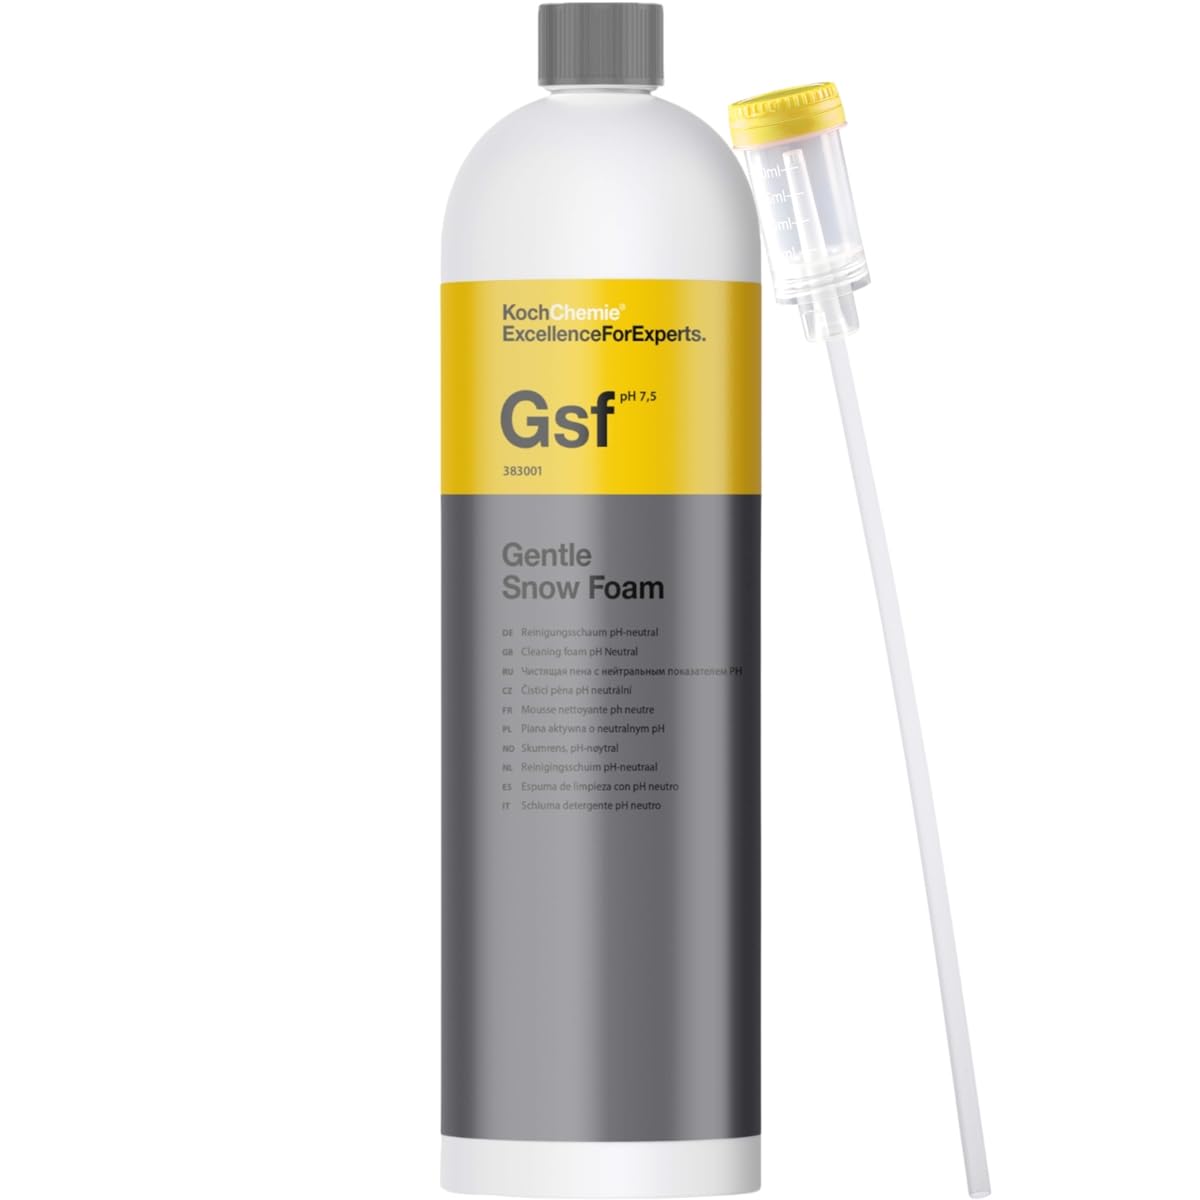 Koch Chemie Gsf Gentle Snow Foam 1 Liter mit Dosing Cap von DFT